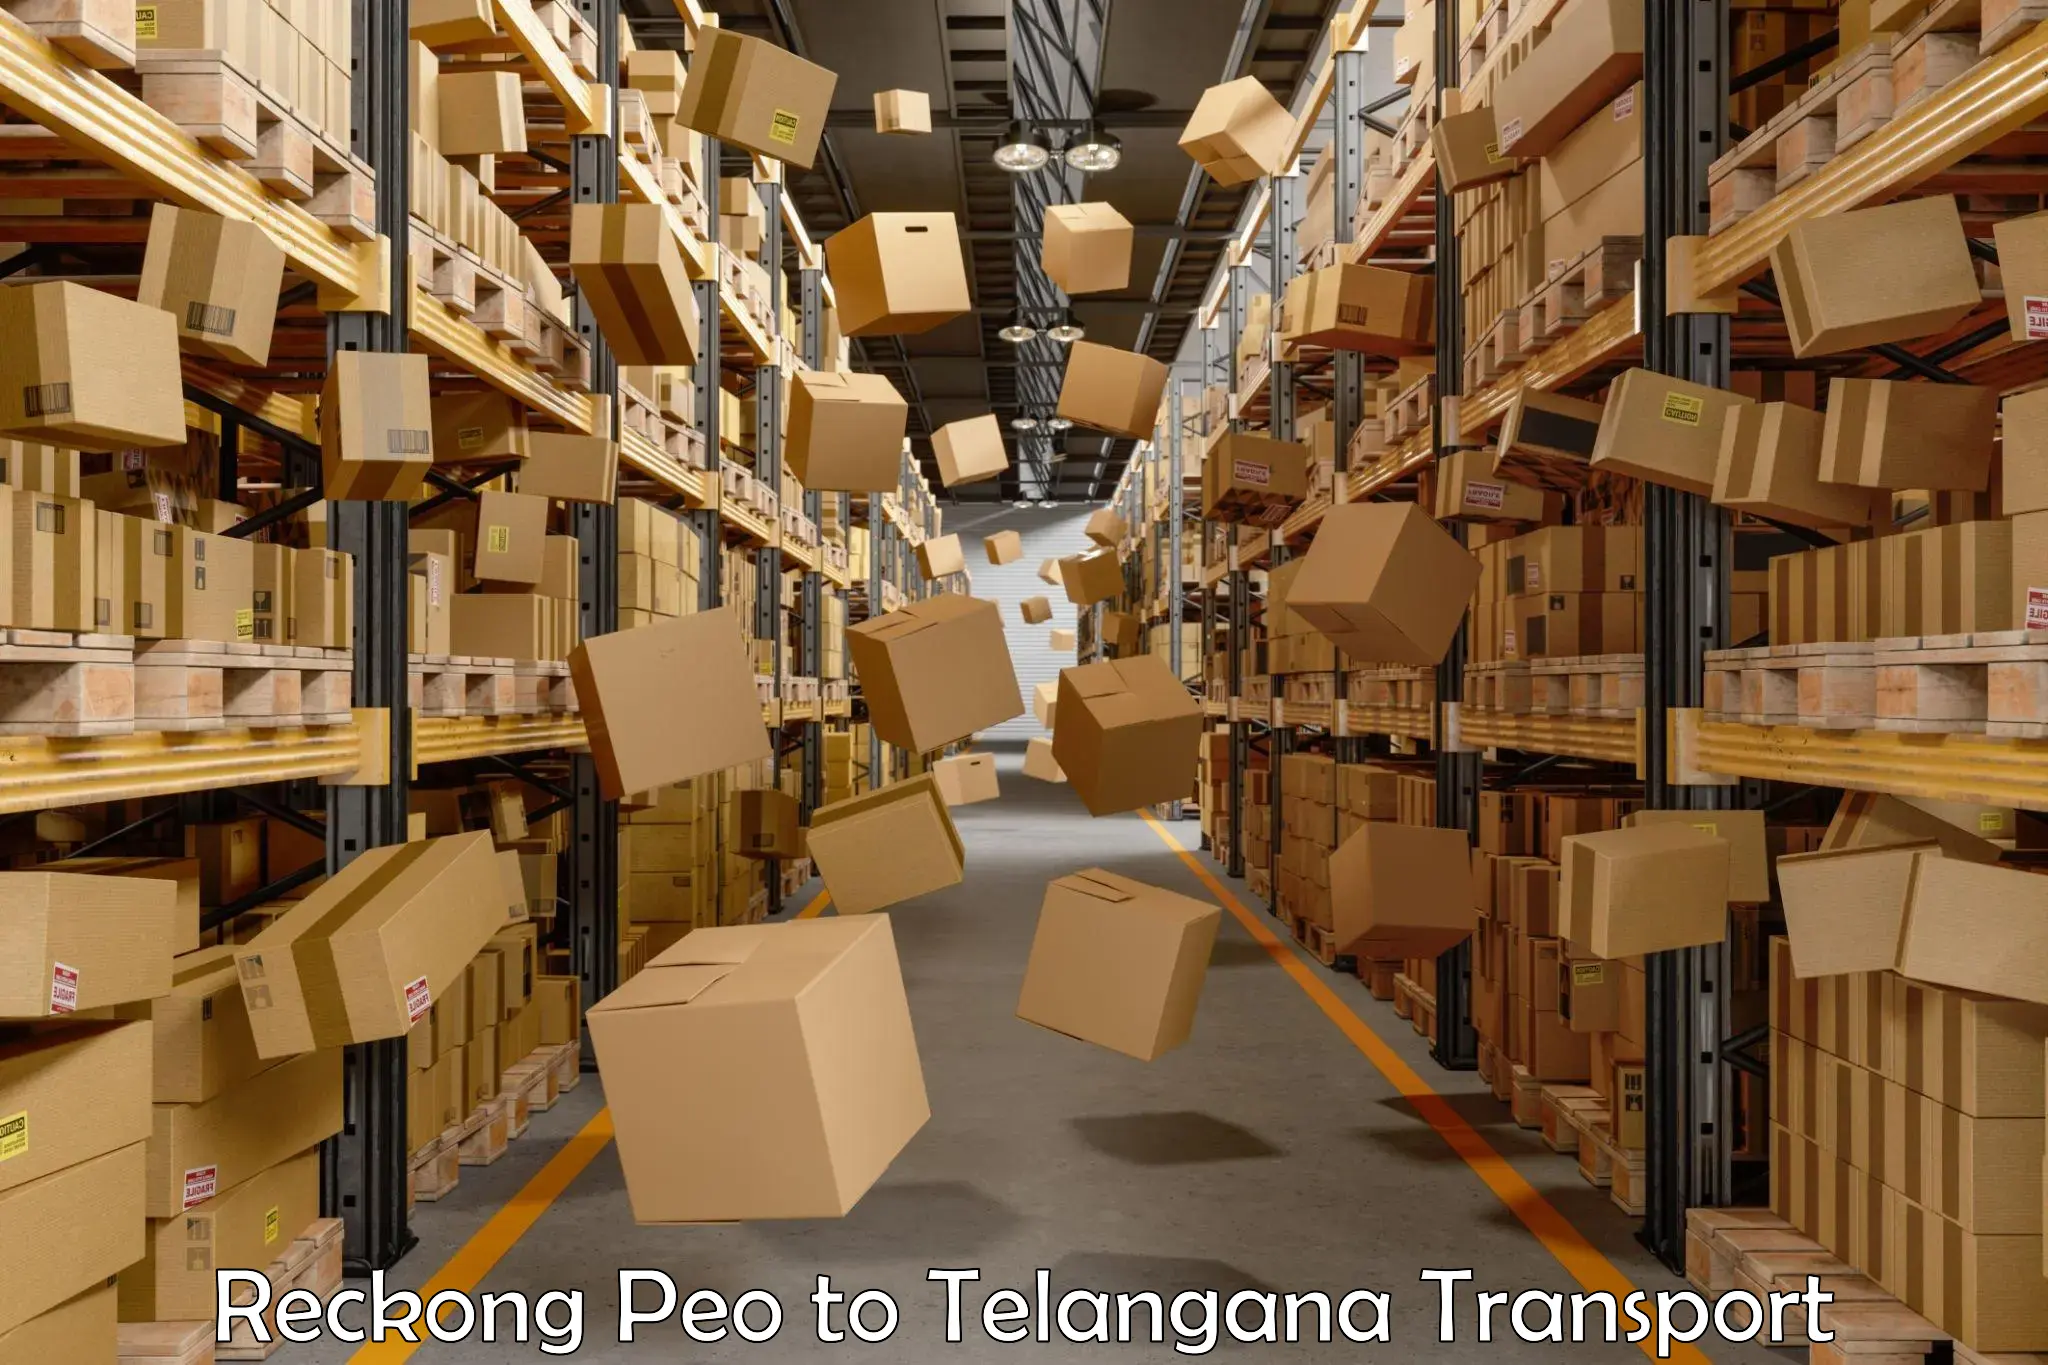 Transport in sharing Reckong Peo to Jangaon